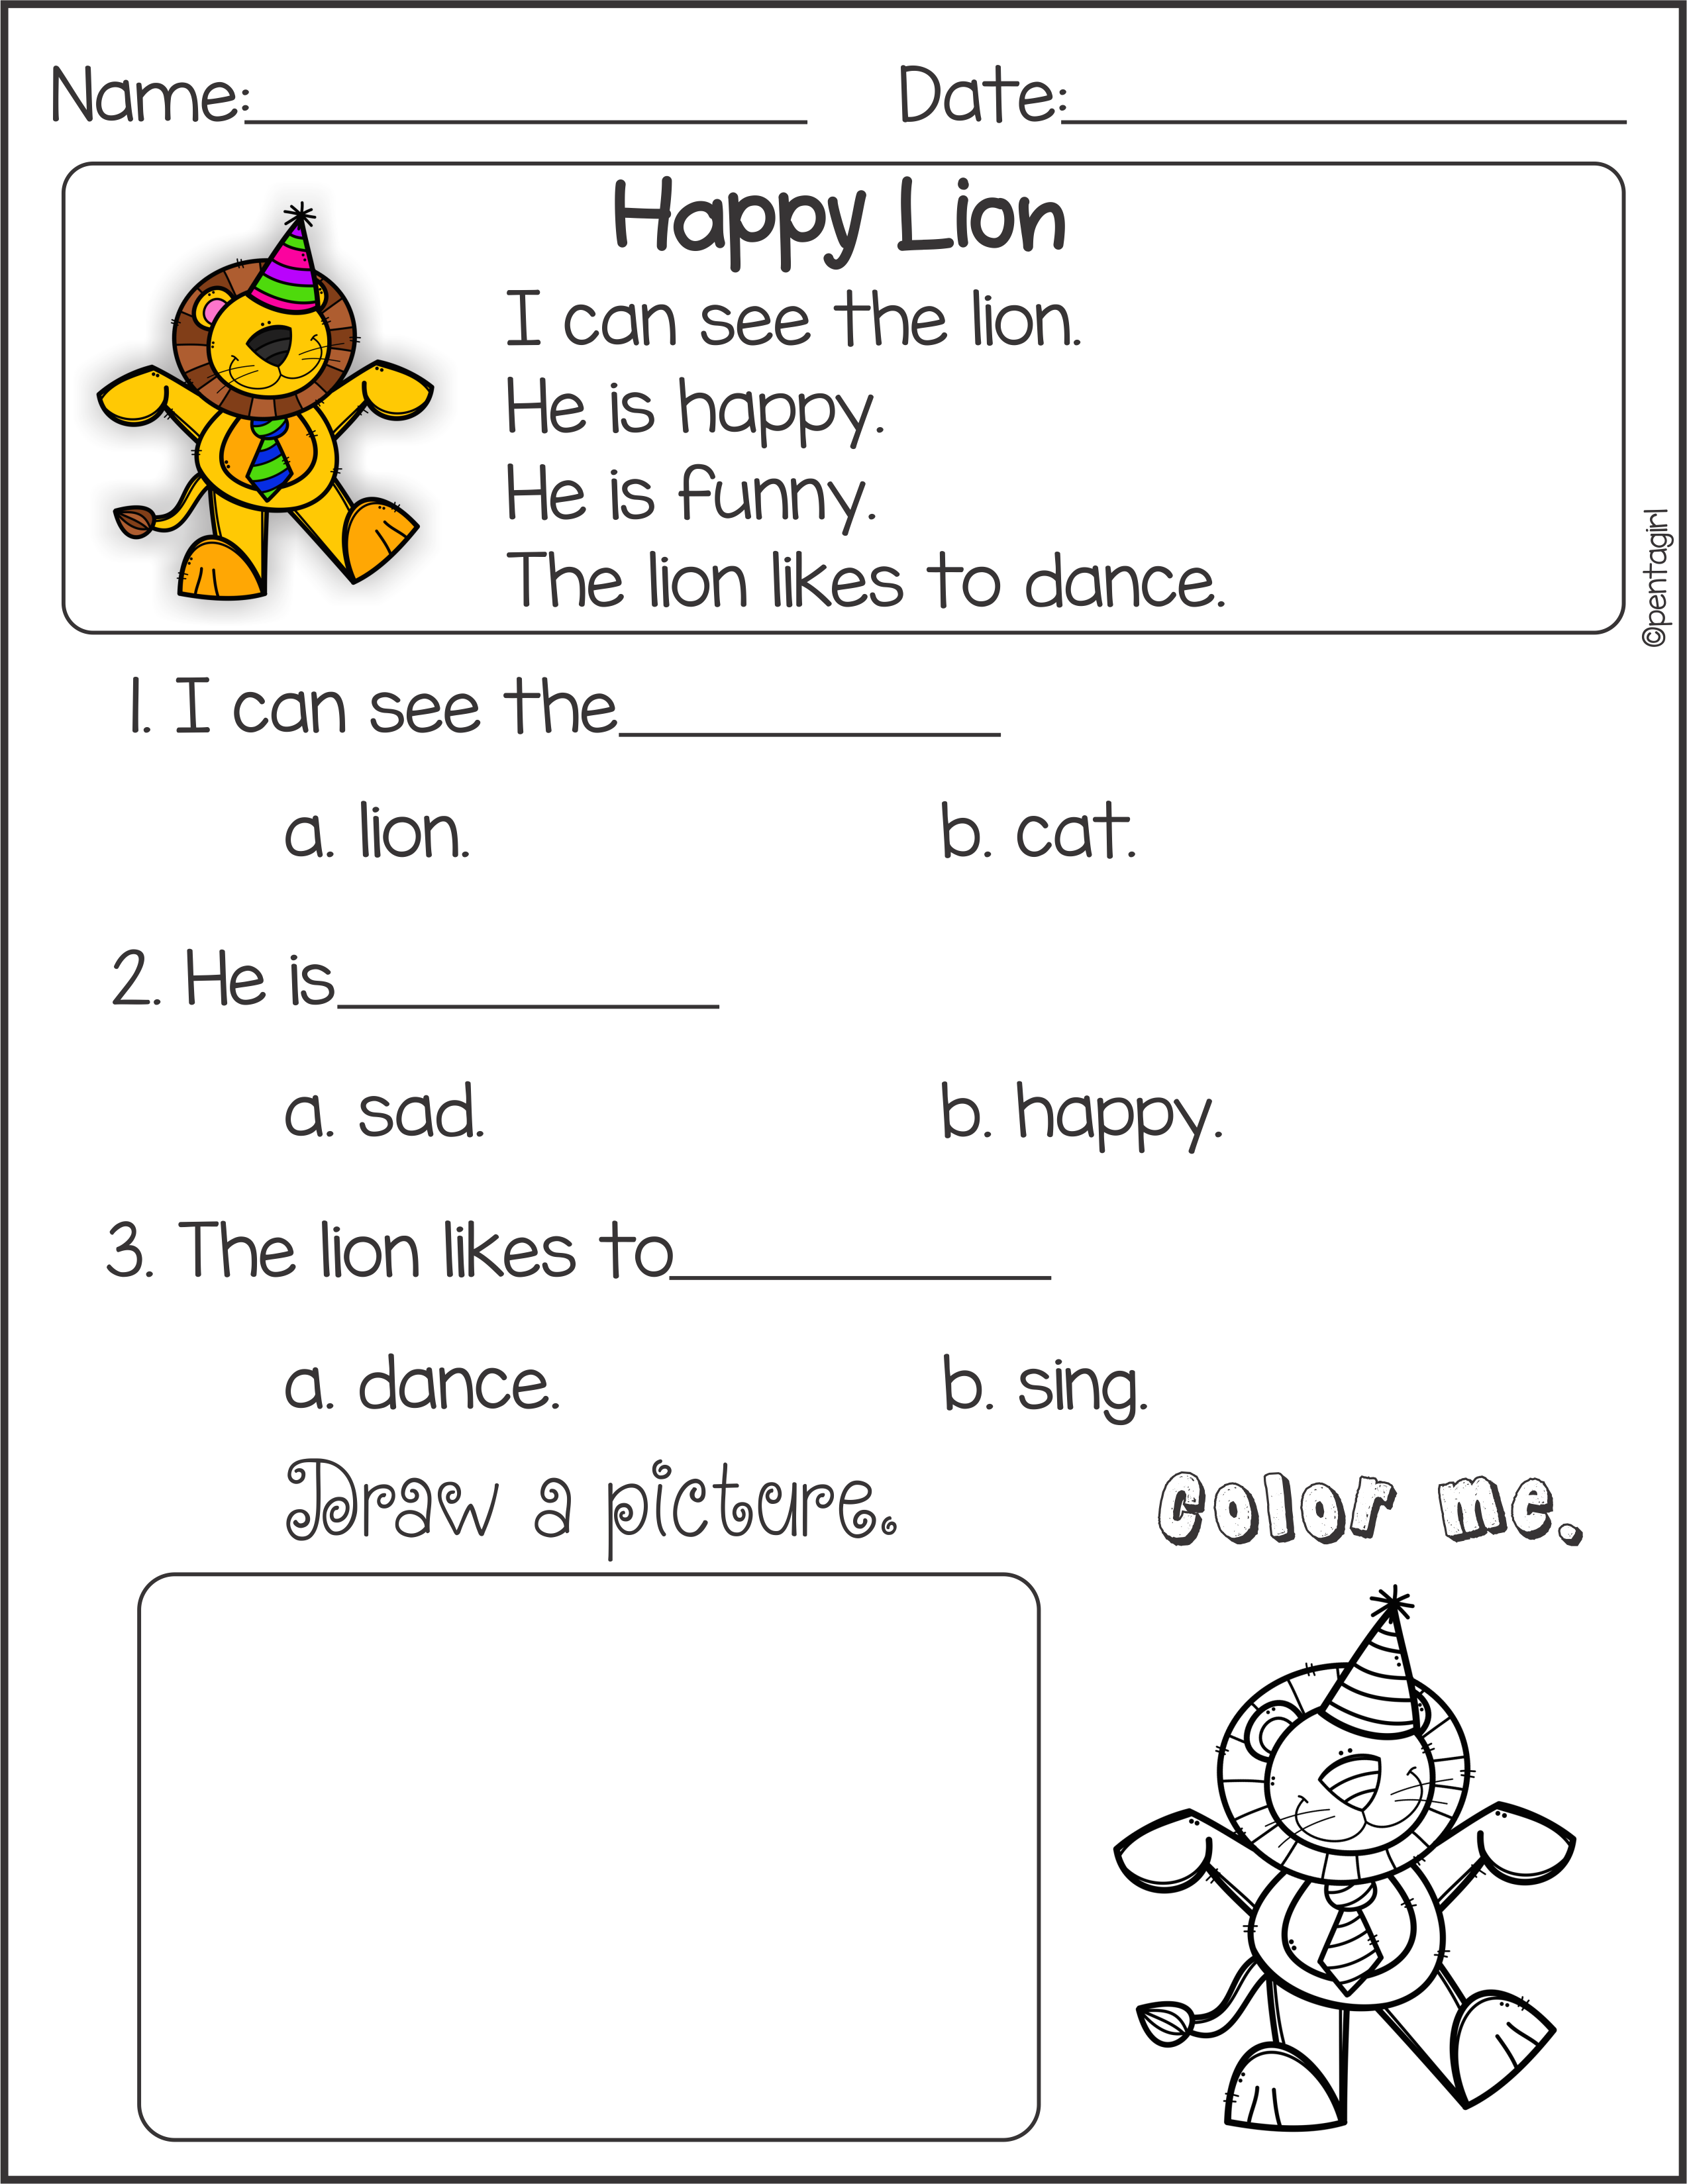 Reading comprehension for kindergarten pdf